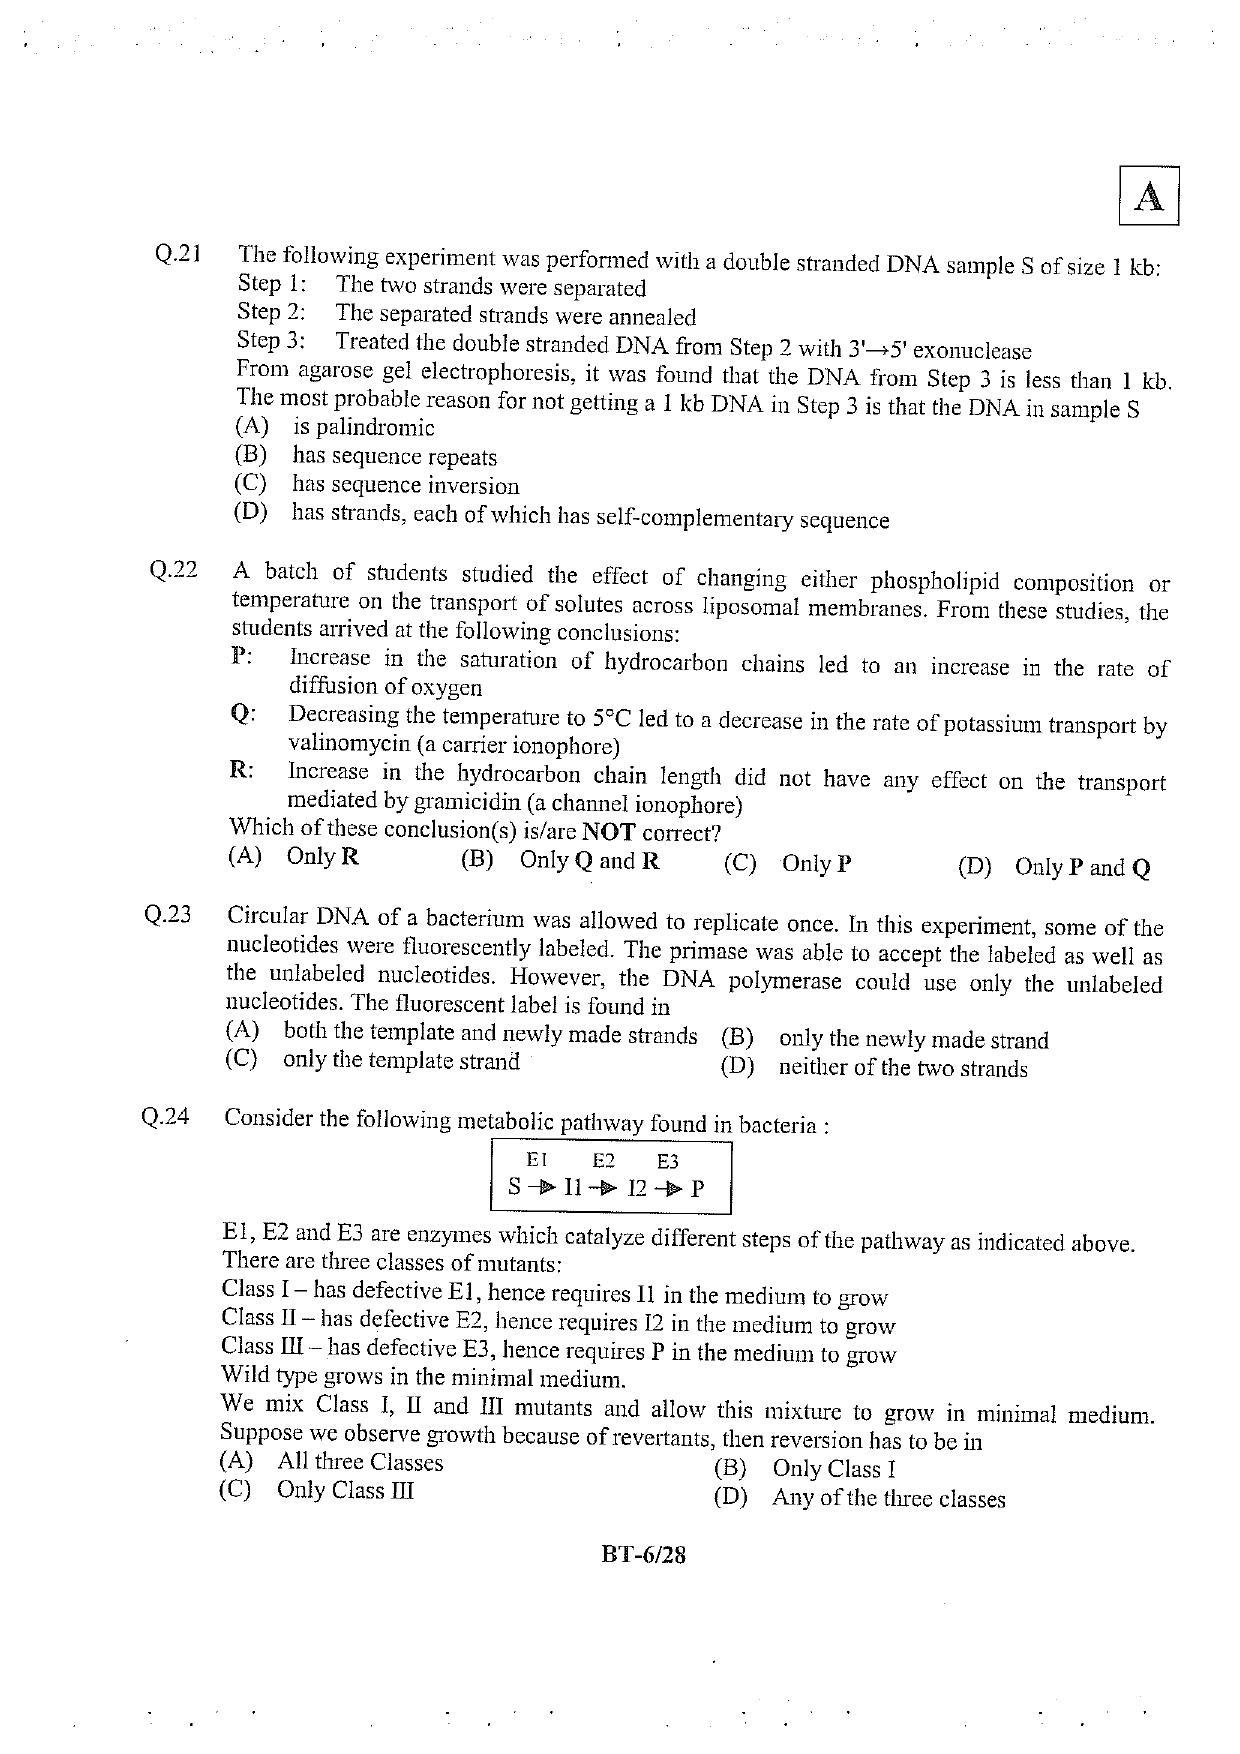 JAM 2013: BT Question Paper - Page 7